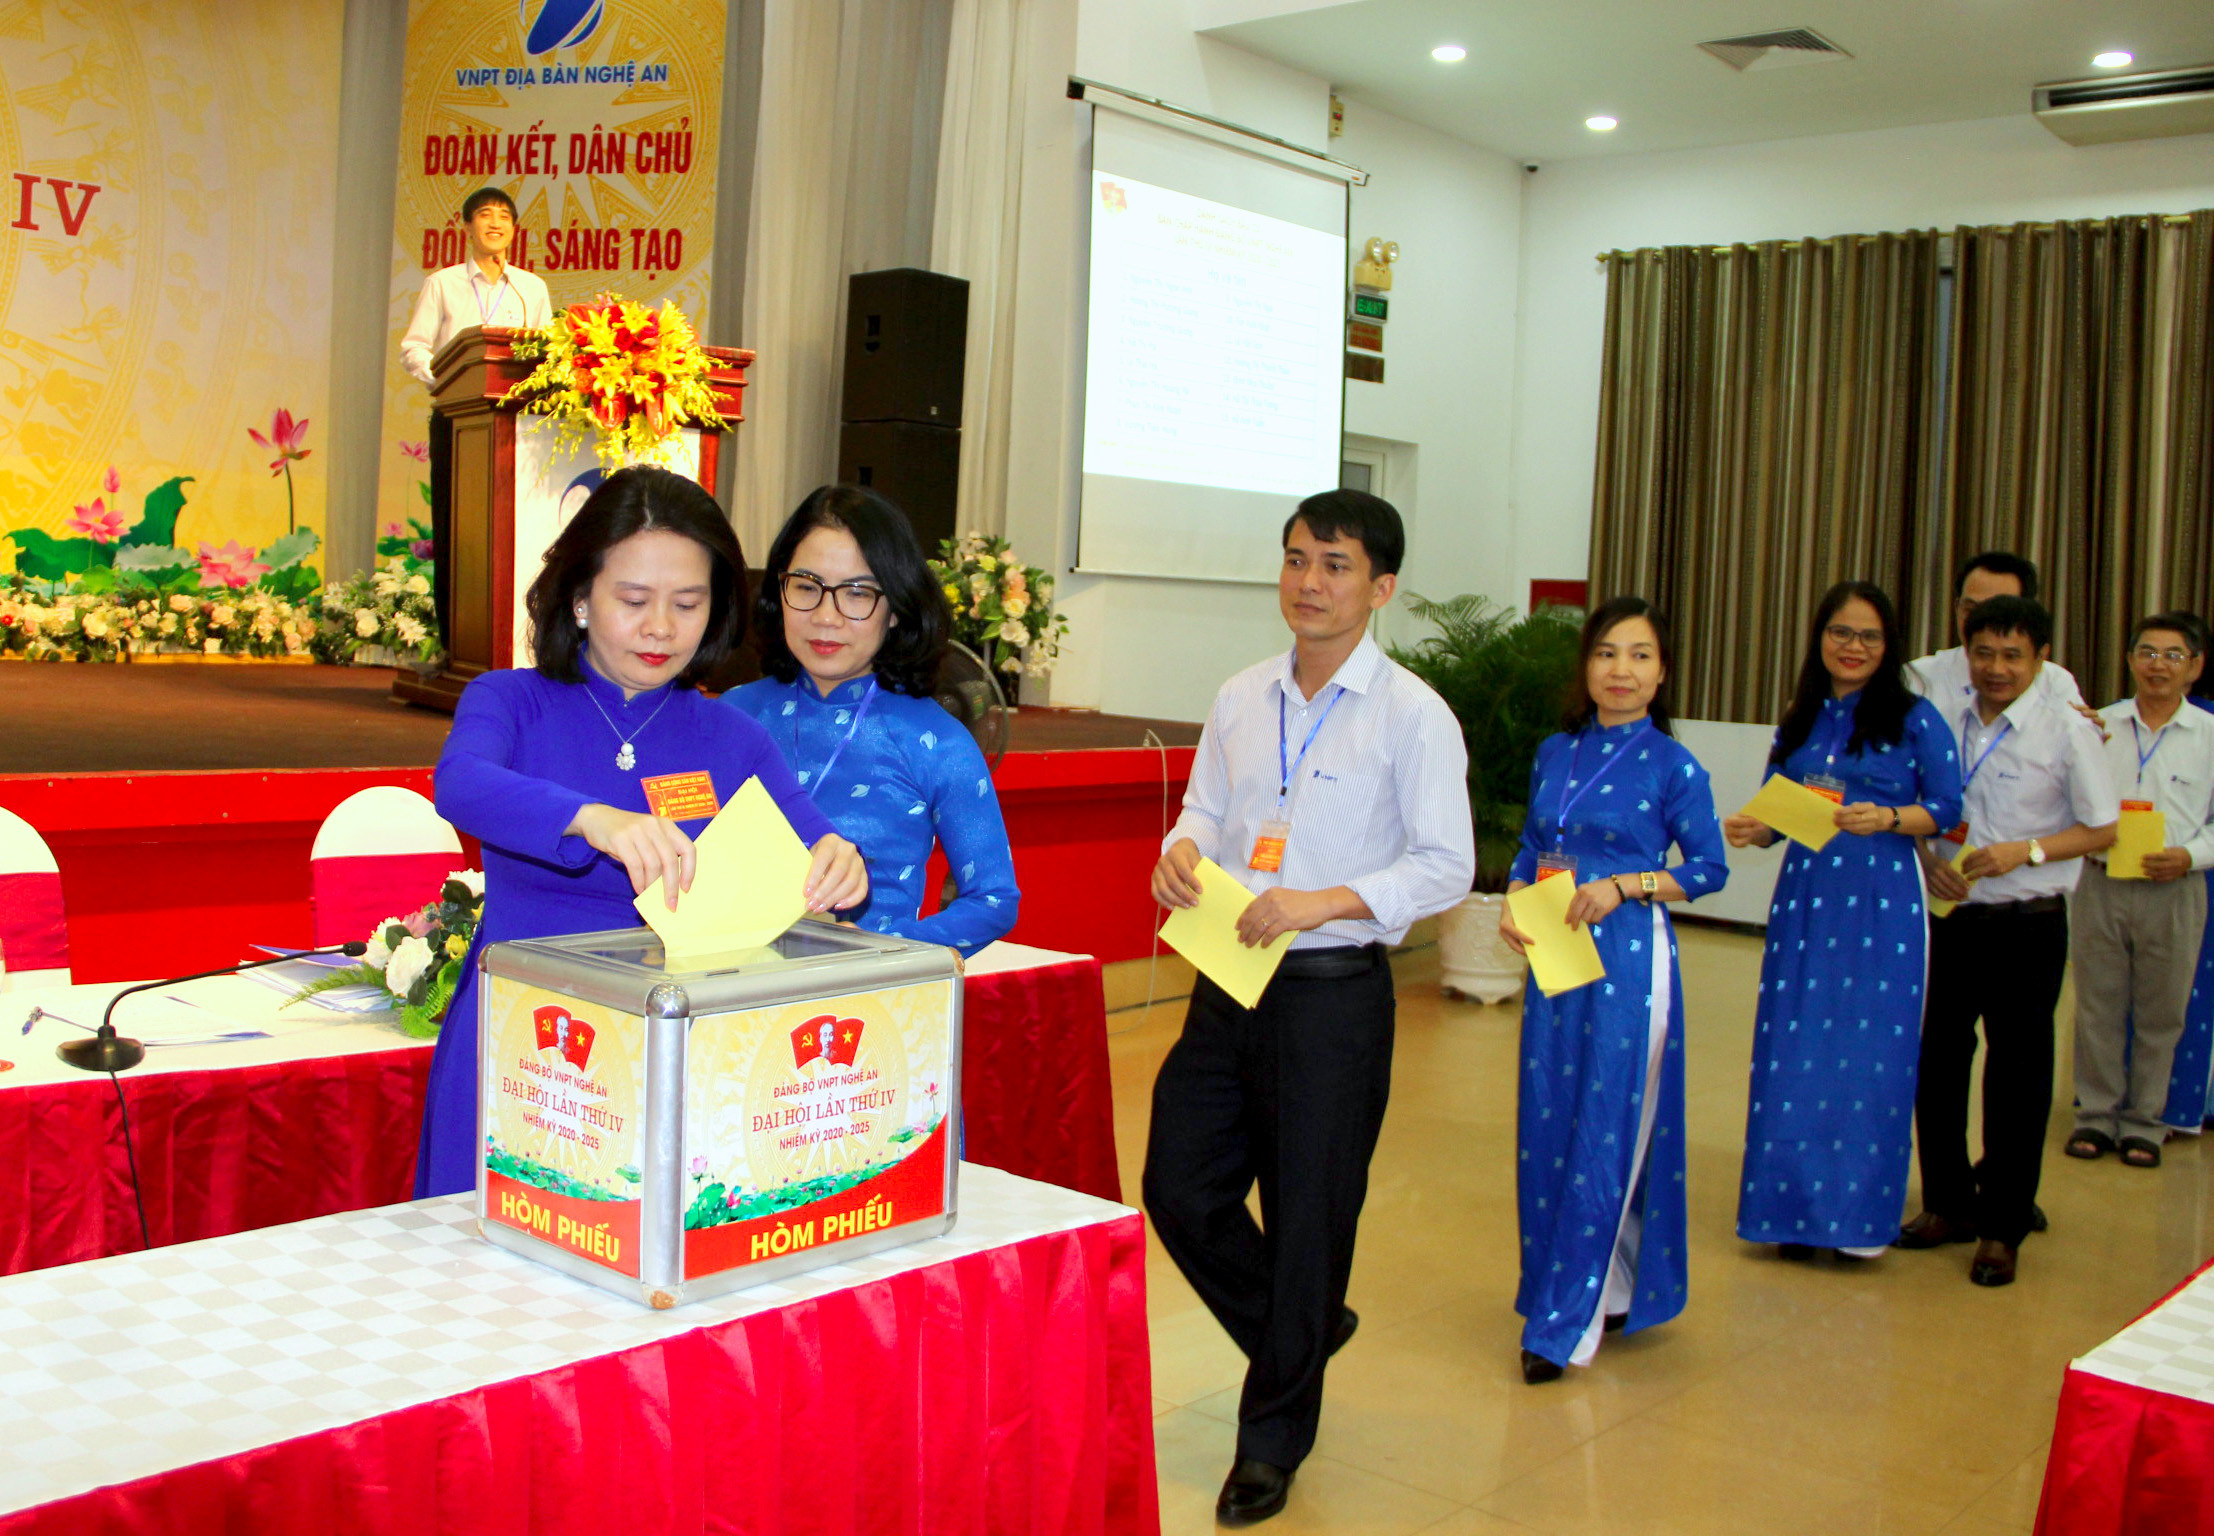 Đại hội Đảng bộ VNPT Nghệ An